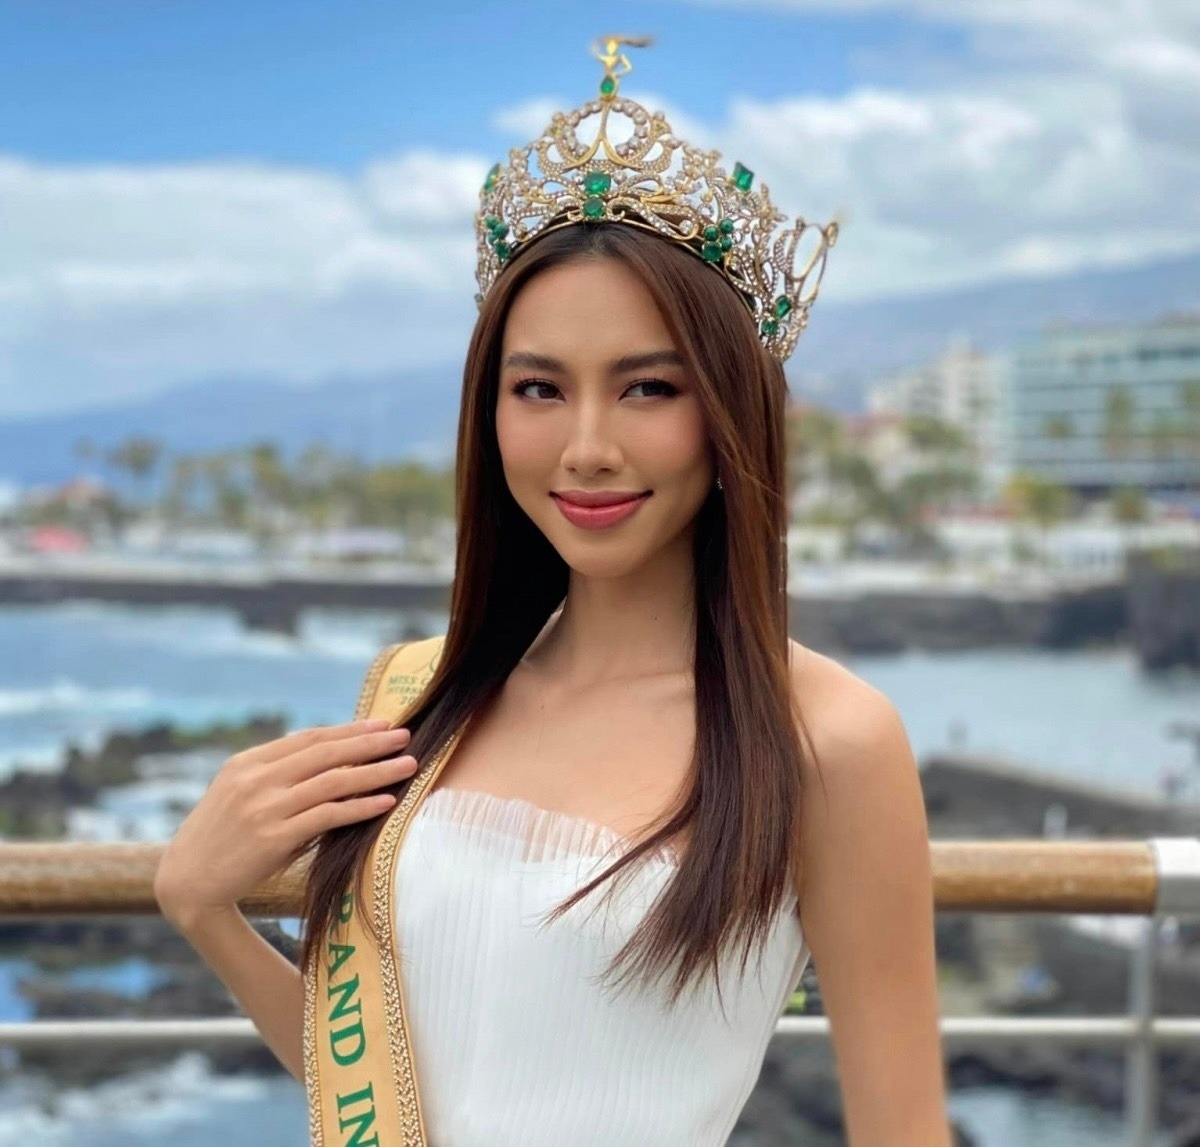 Hoa hậu Thùy Tiên vắng mặt trong vụ kiện 2,4 tỉ đồng - Ảnh 1.